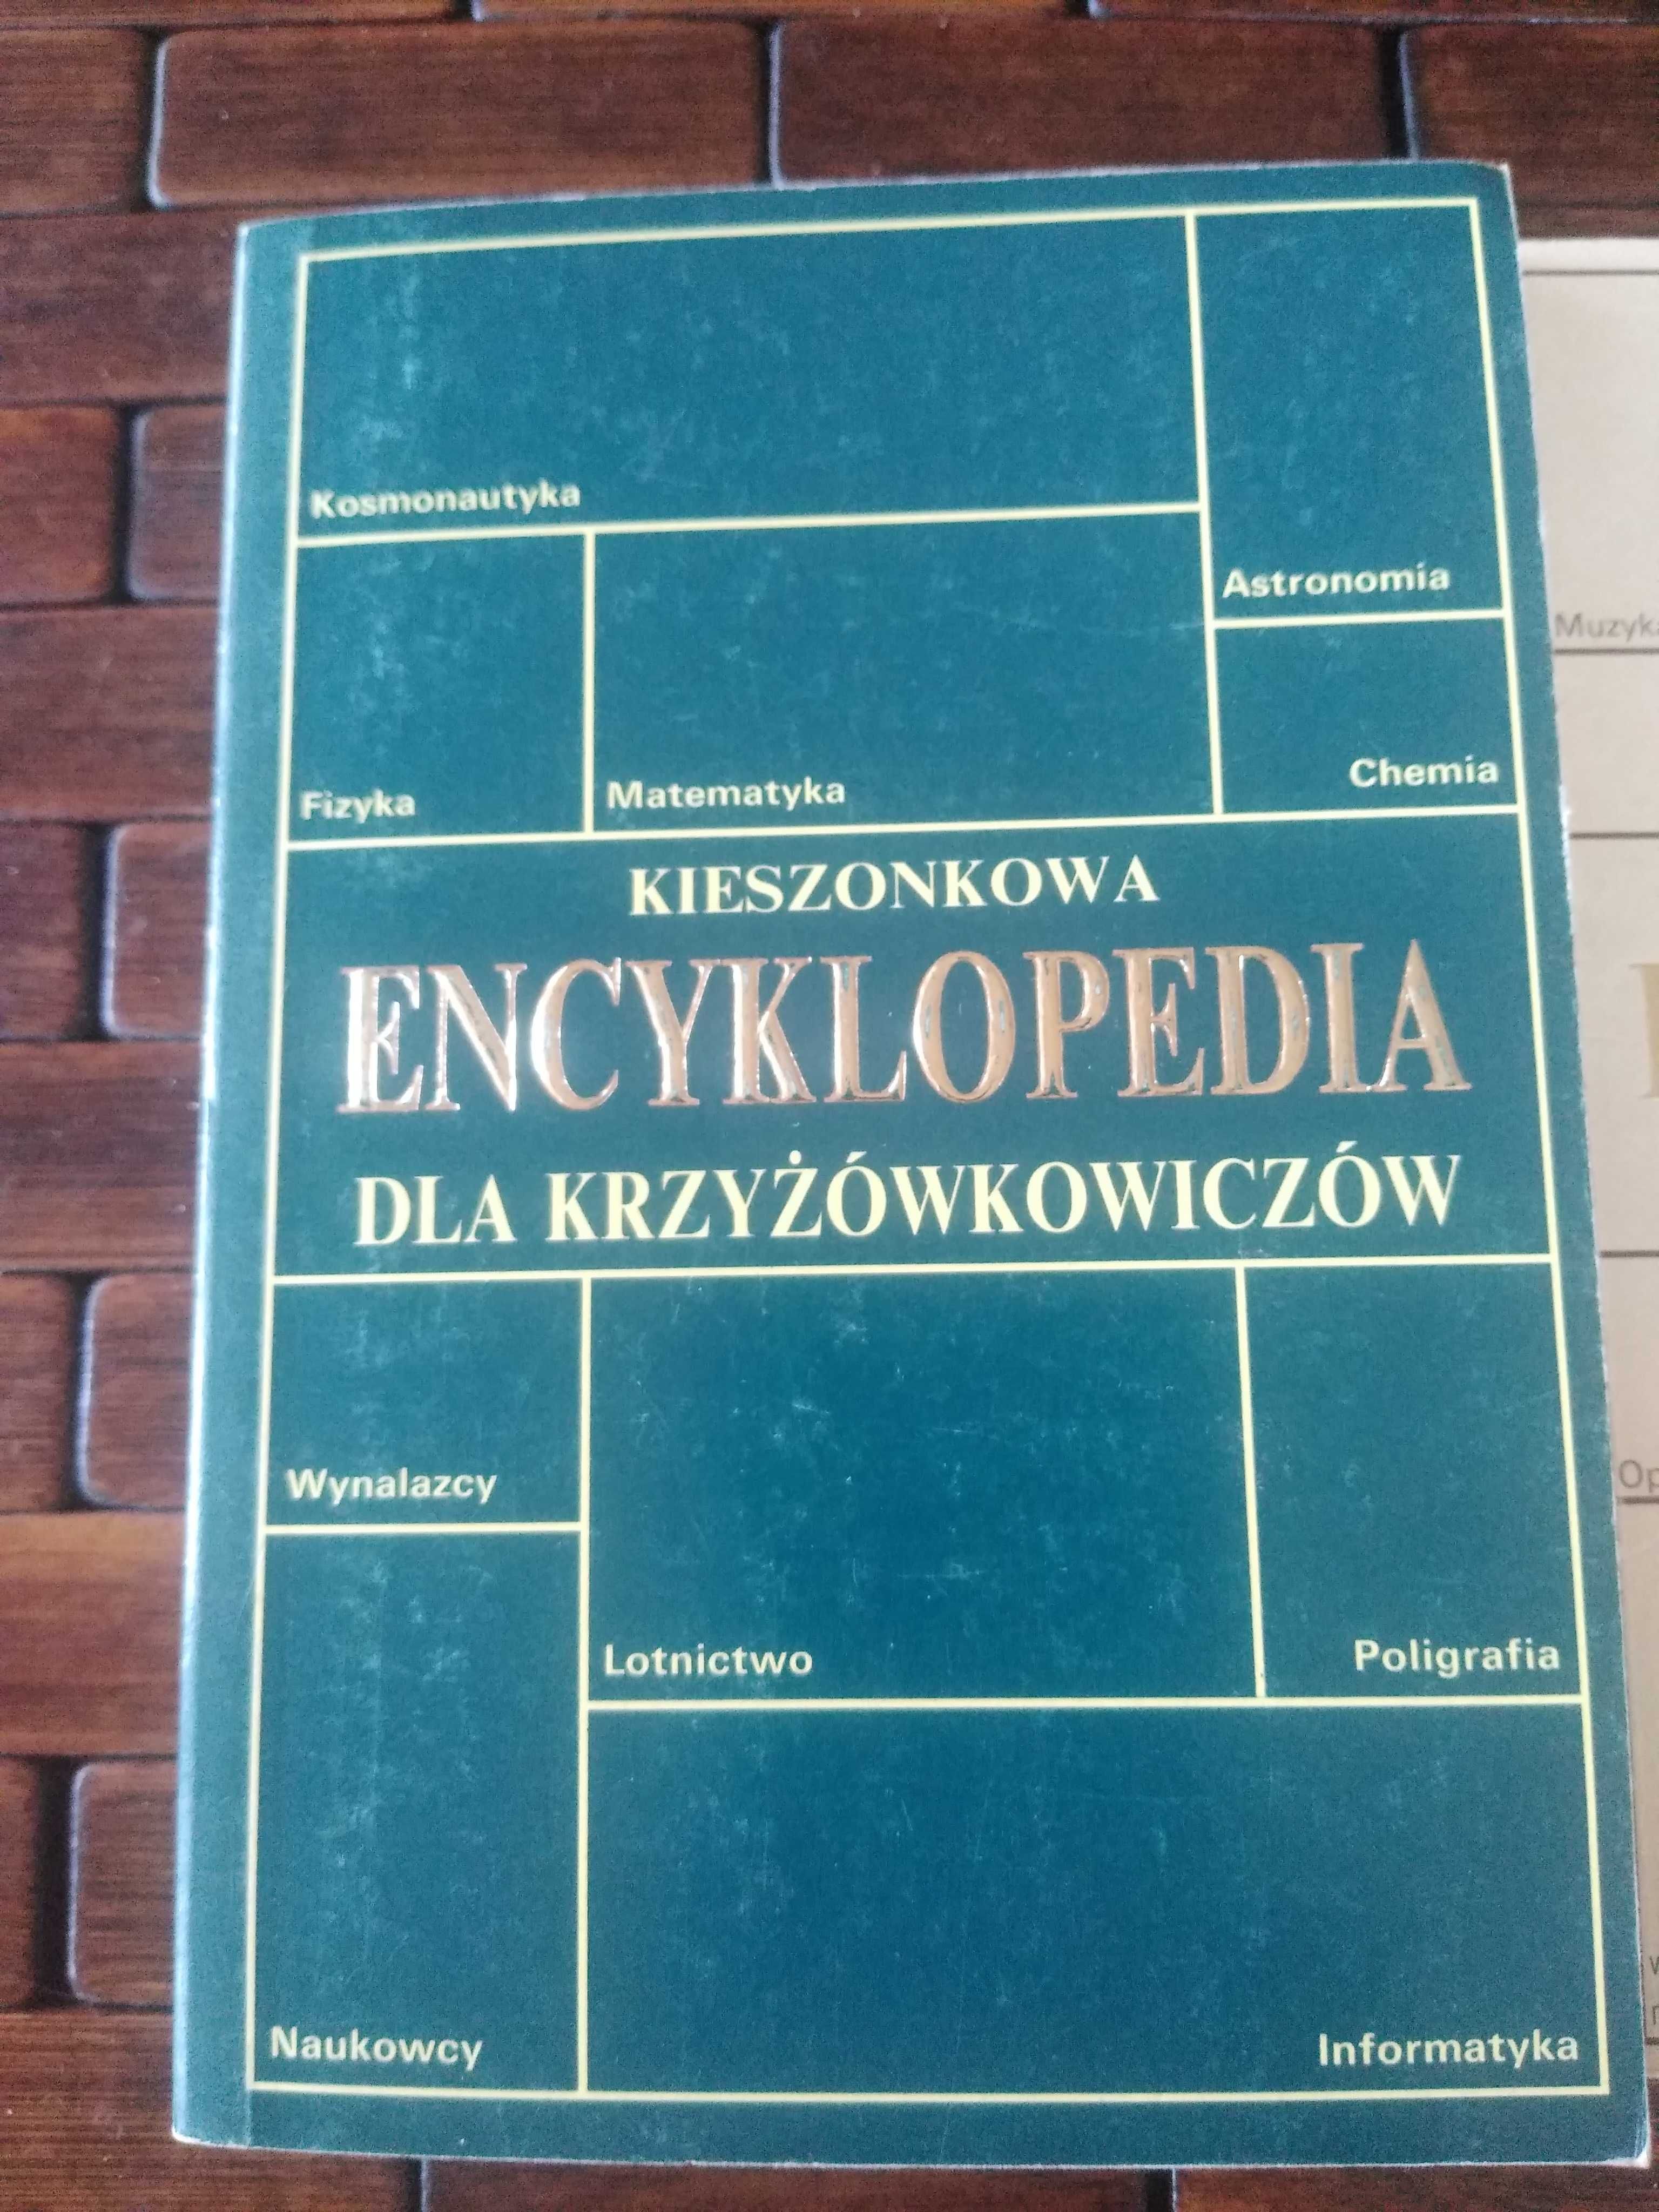 Leki,piekarski kieszonkowa encyklopedia dla krzyzowkowiczow